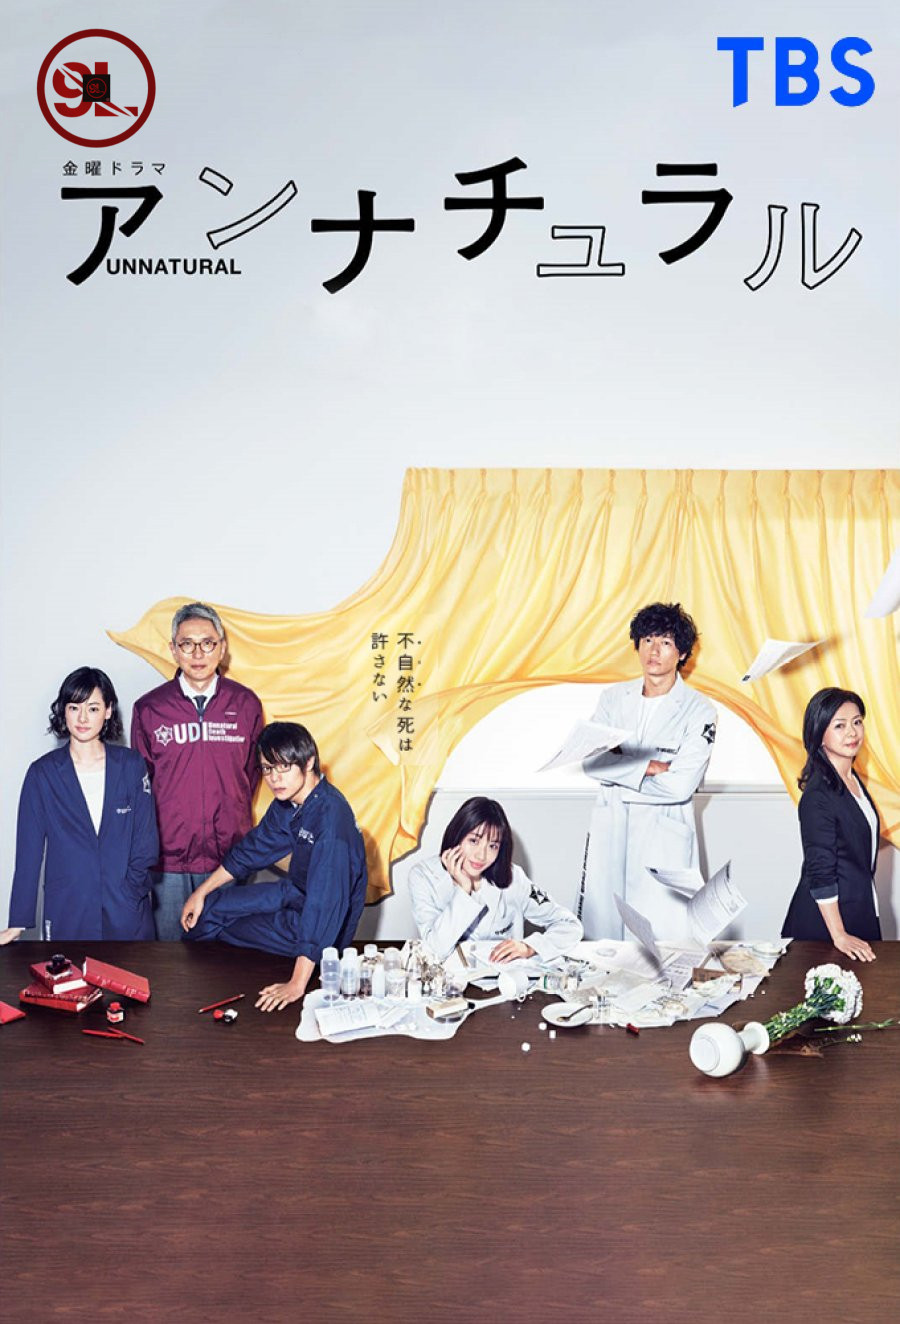 Unnatural Season 1 (Complete) Japanese Drama